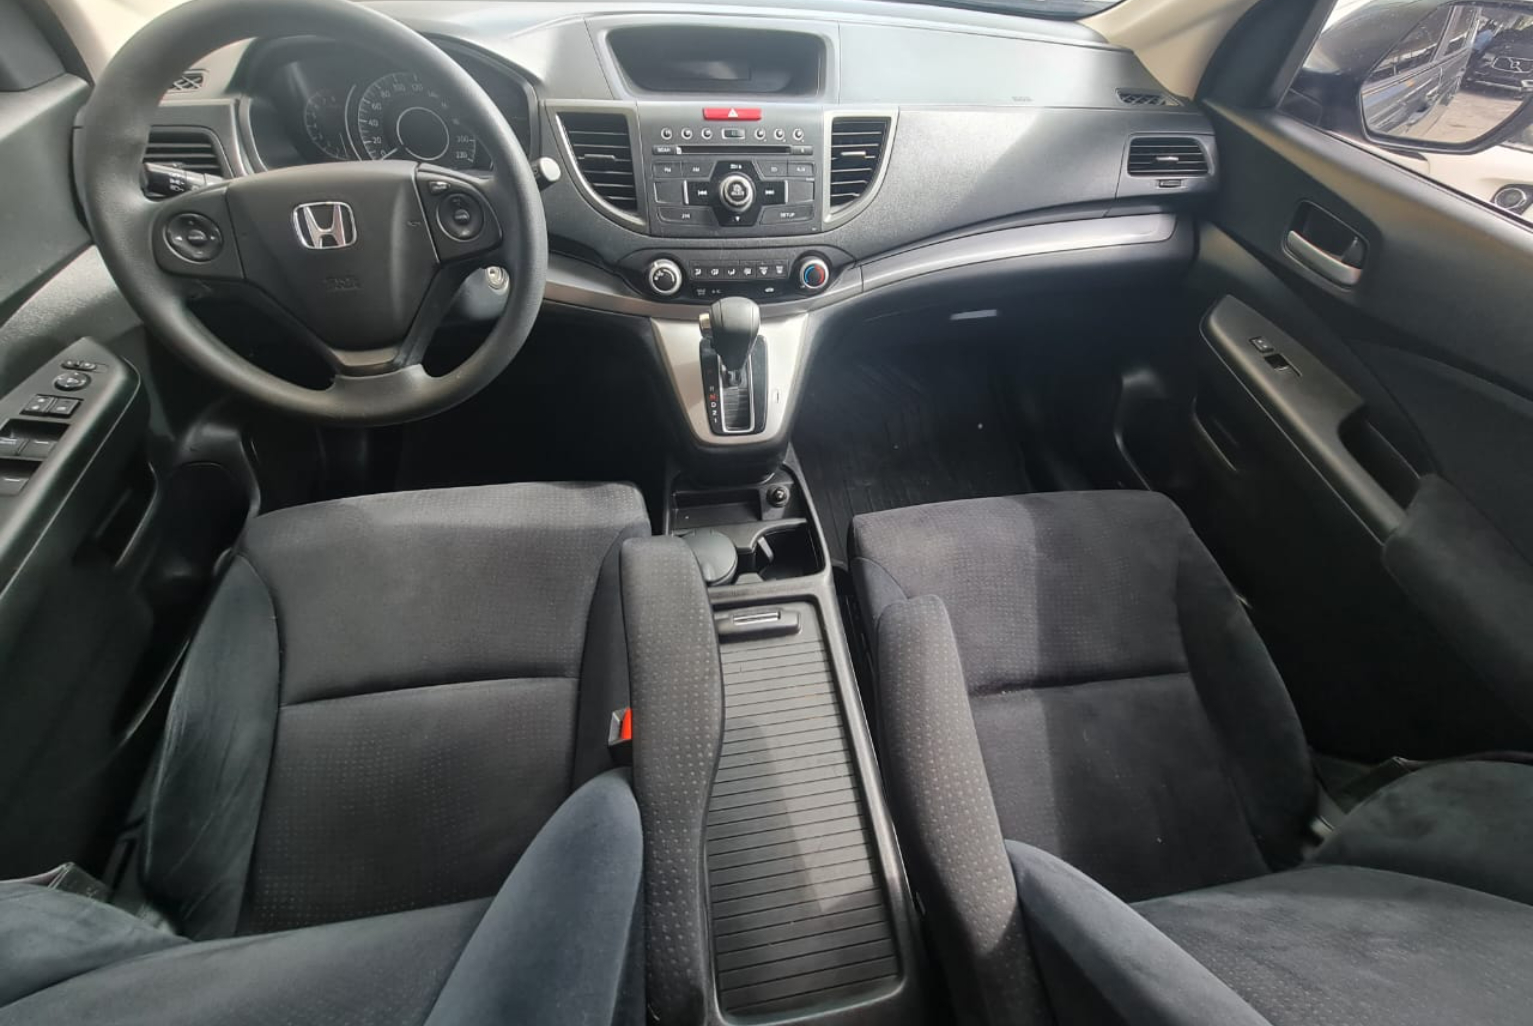 Honda CR-V 2014 Automático color Gris, Imagen #10